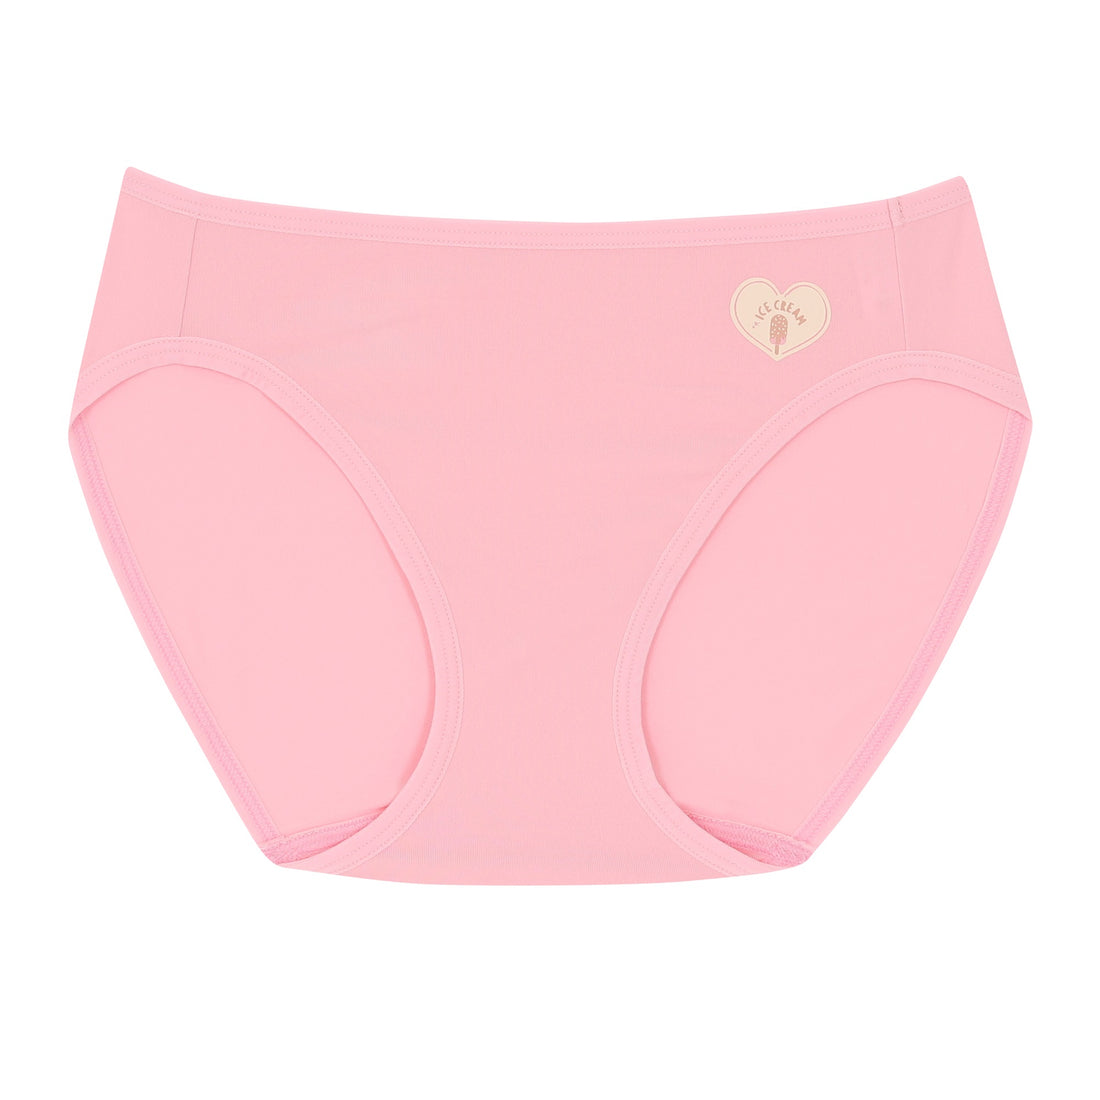 Wacoal Panty กางเกงในรูปแบบบิกินี รุ่น WU2C04 สีชมพู (OR)